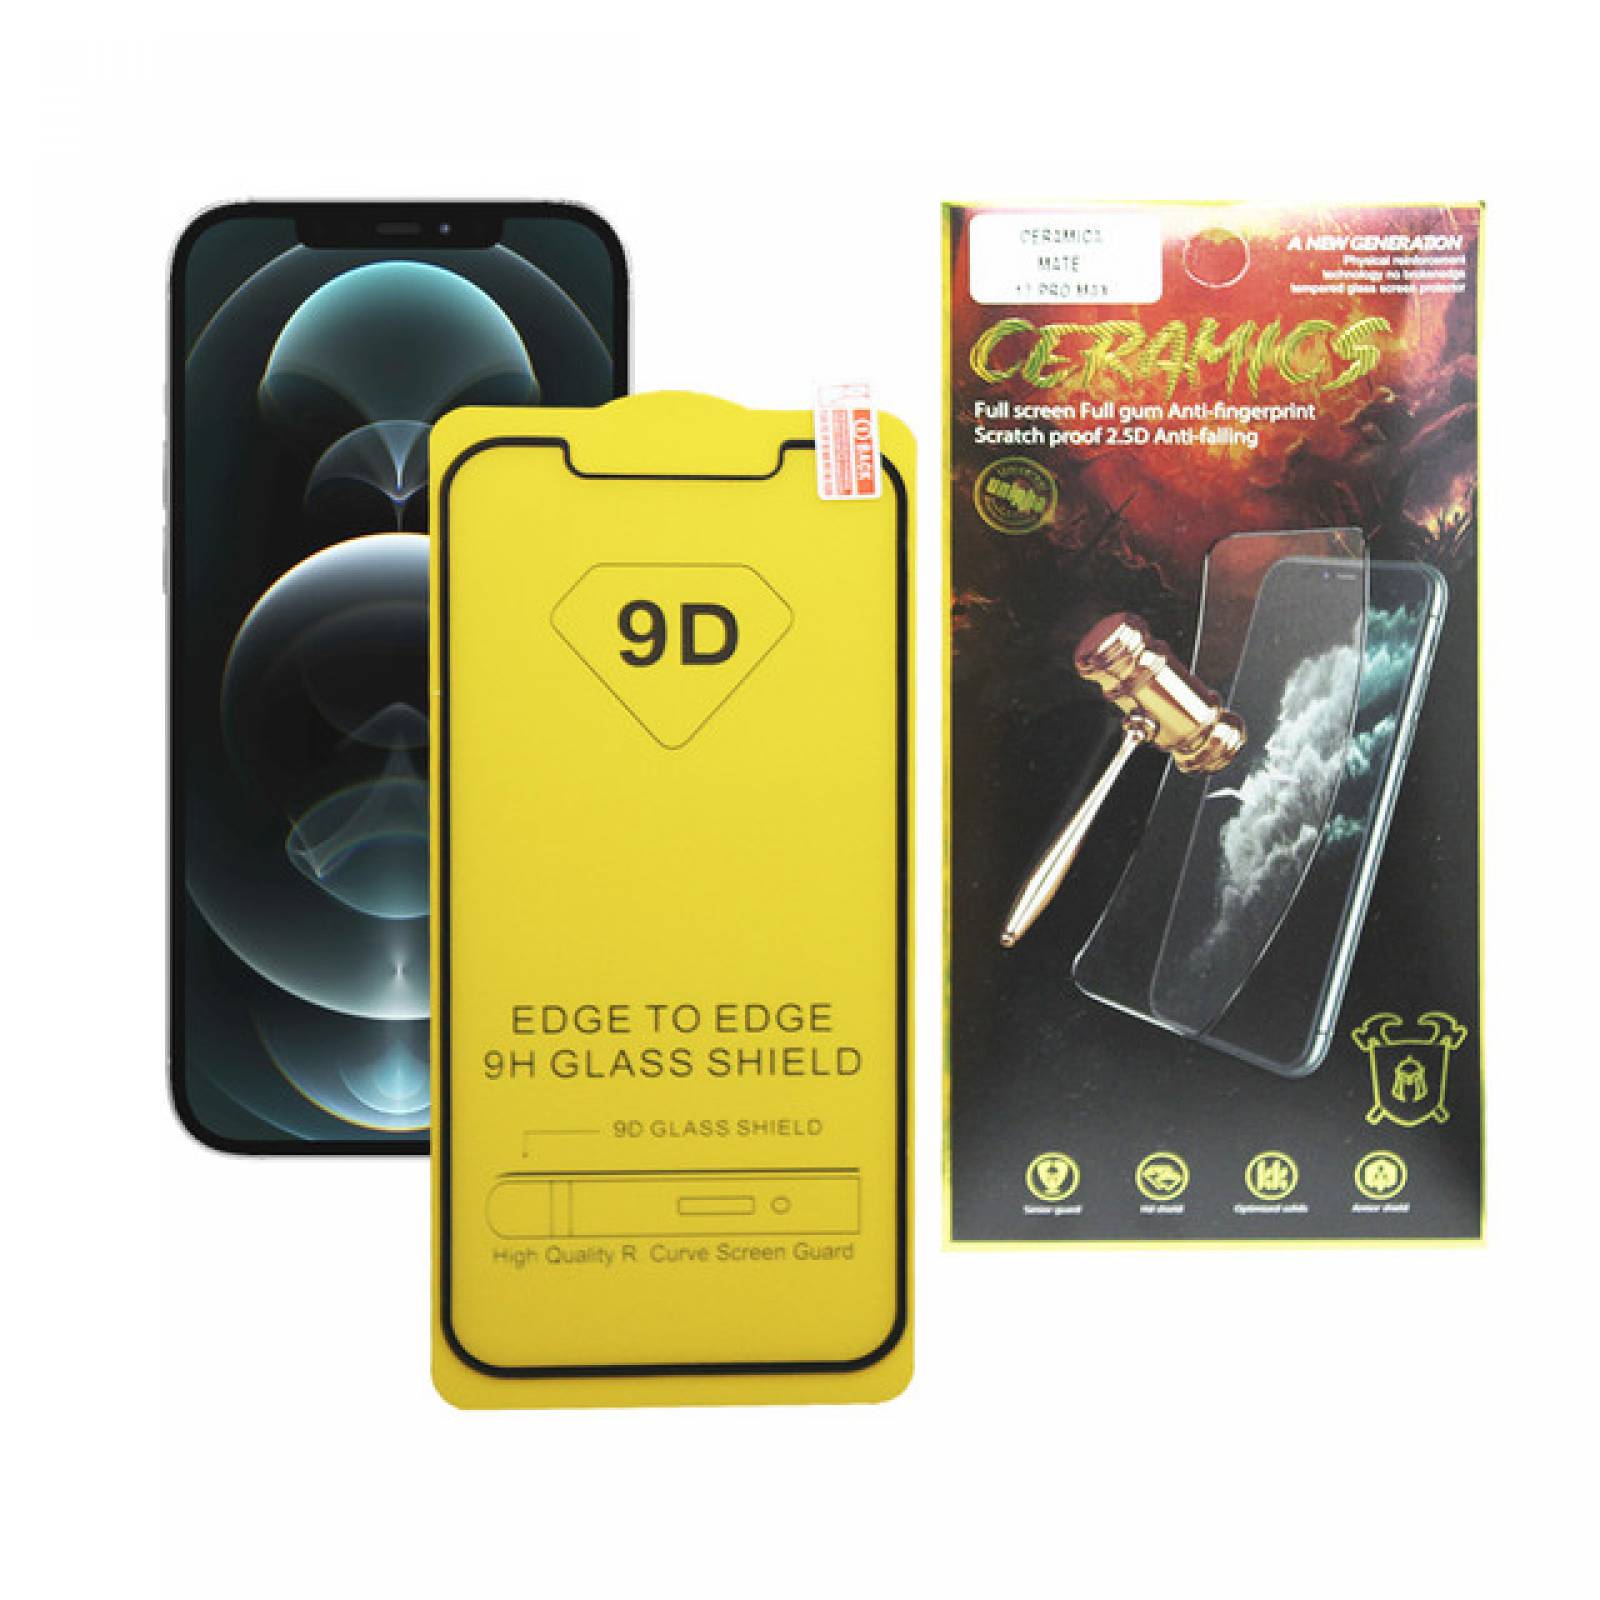 Protector de Nano Cerámica para Pantalla iPhone 12 Mini Duradero y